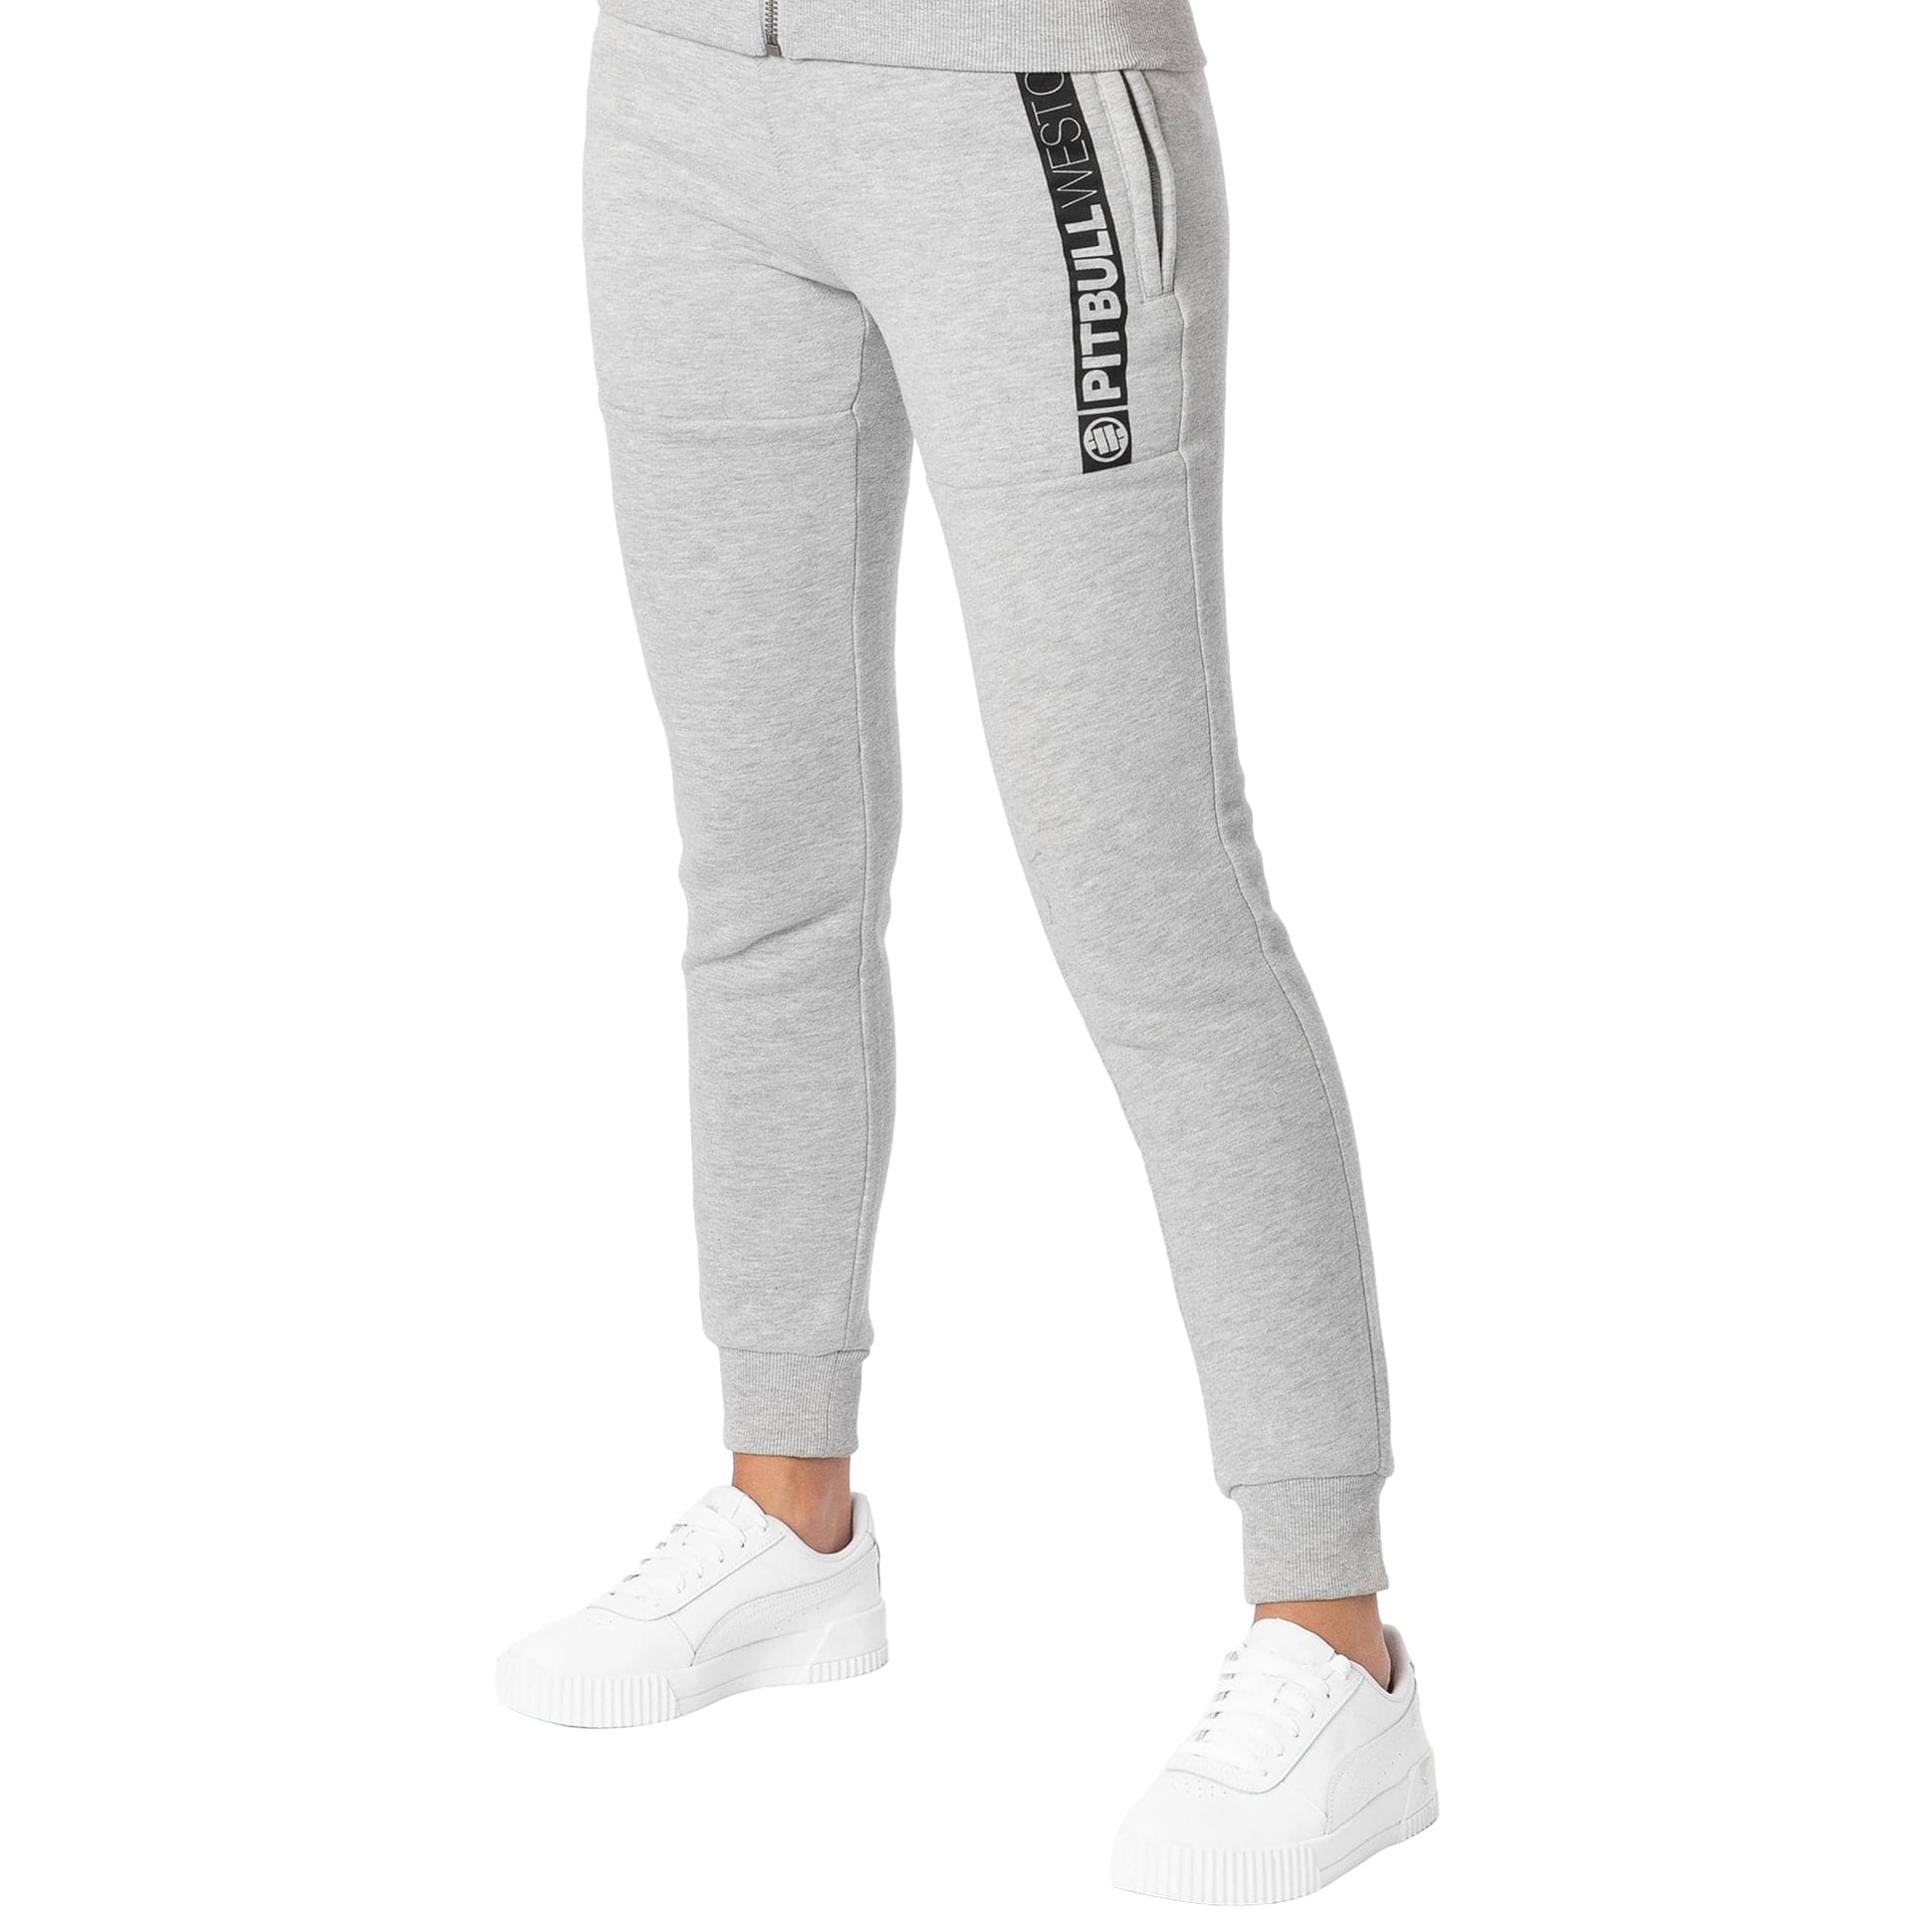 Жіночі спортивні штани Pitbull West Coast Hilltop - Grey